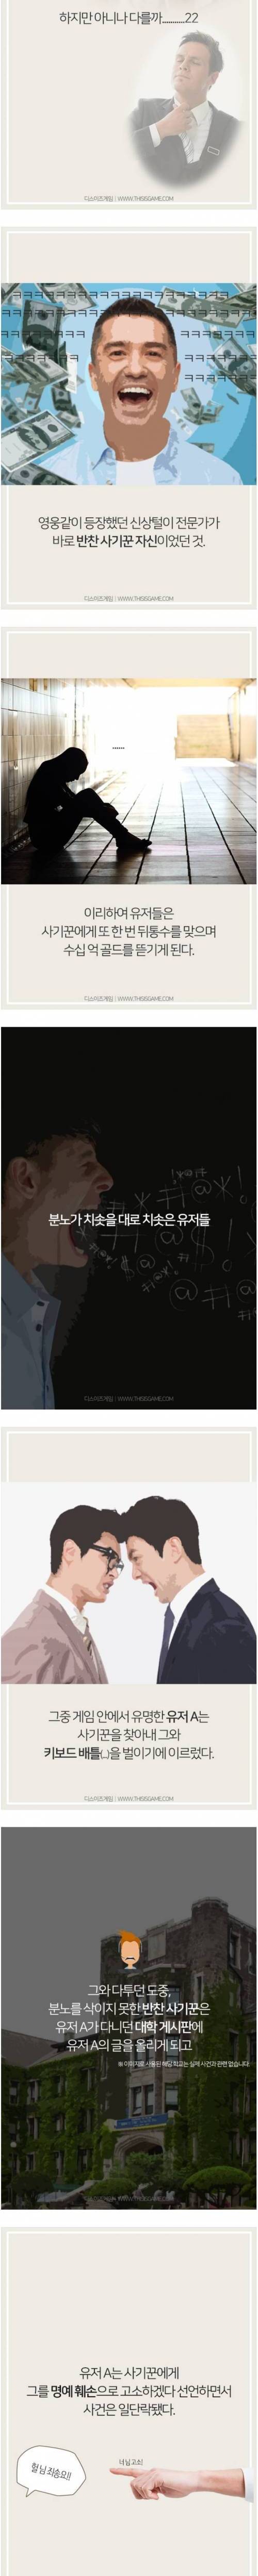 [스압] 전설의 마영전 '간장게장 사건'